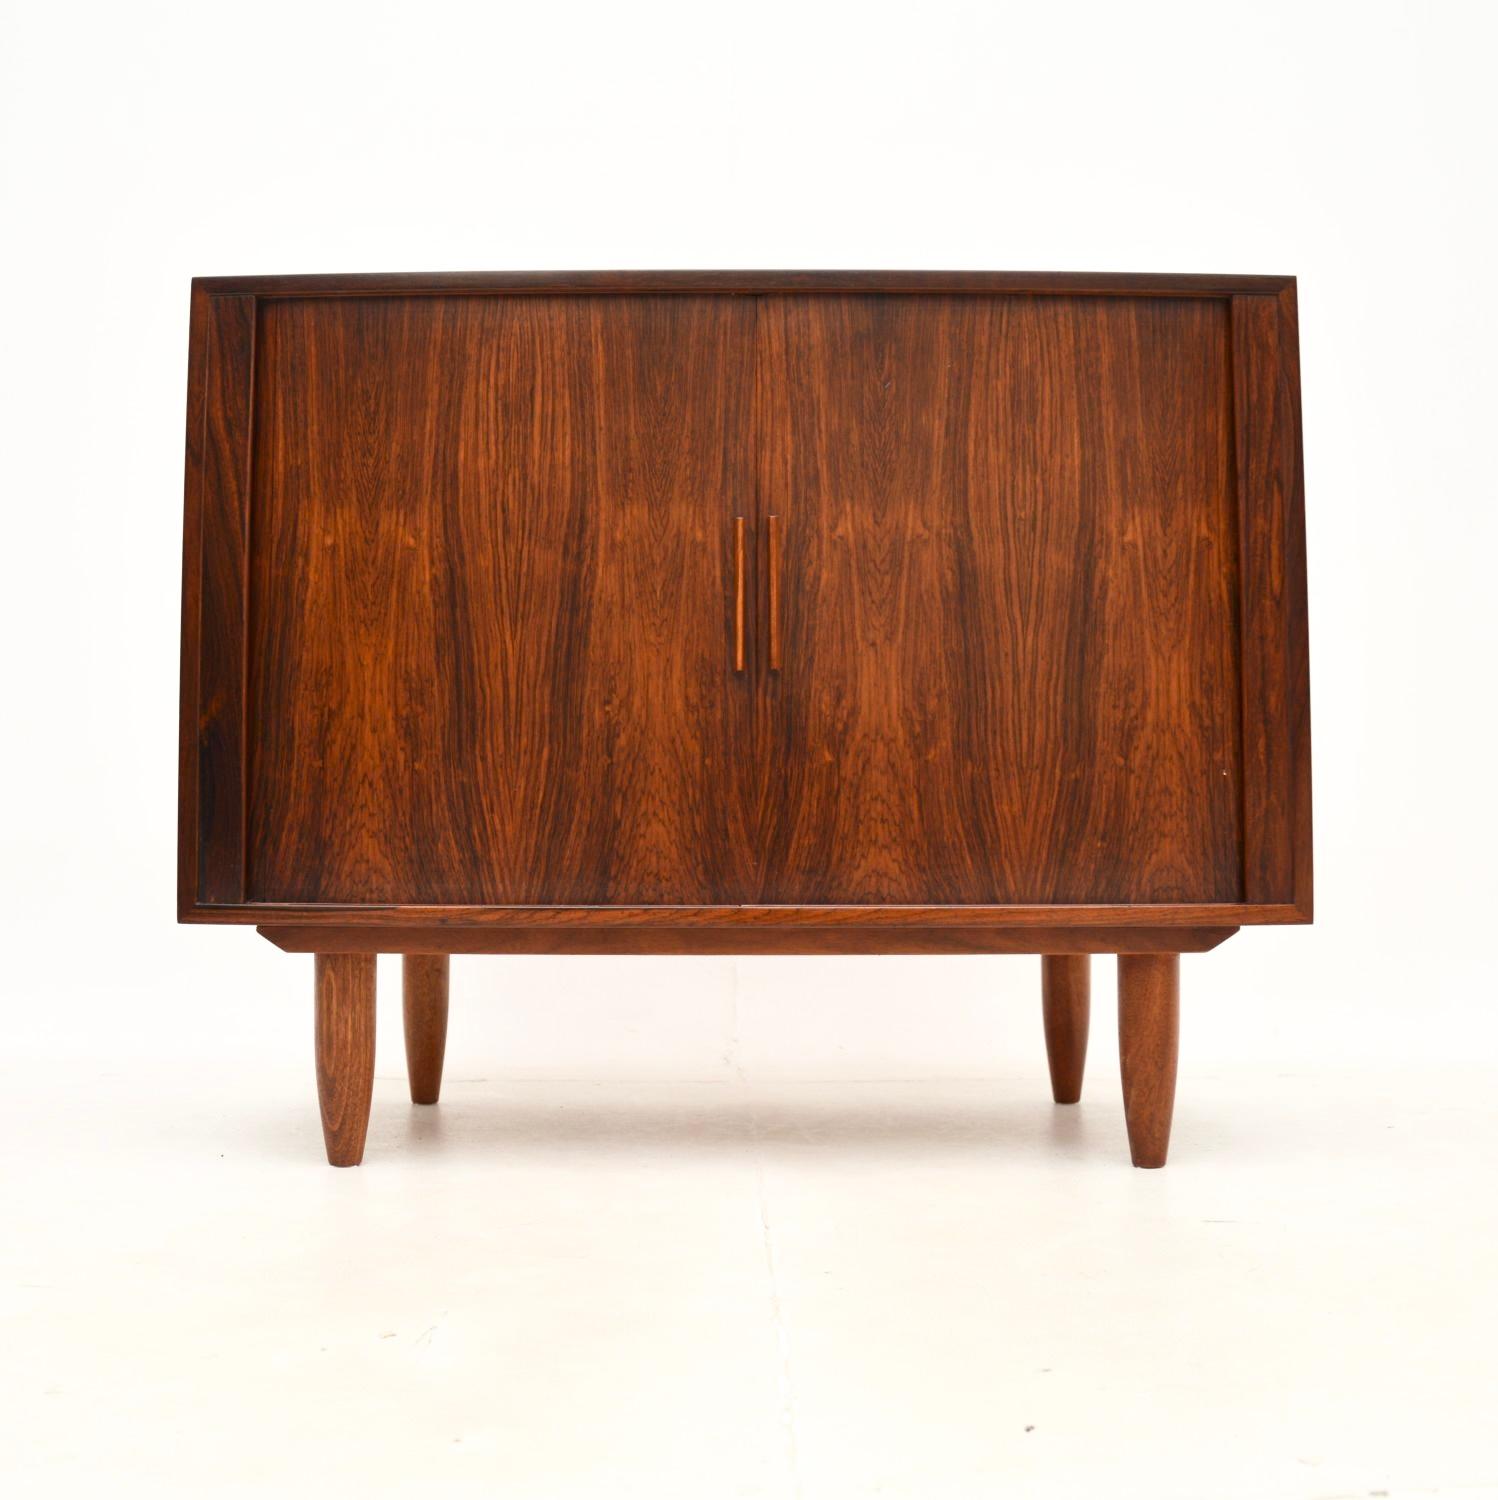 Un magnifique meuble vintage danois de Kai Kristiansen, fabriqué au Danemark dans les années 1960.

Il est d'une superbe qualité, avec un design très élégant et pratique. La couleur et les motifs du grain sont magnifiques, ce produit est superbe